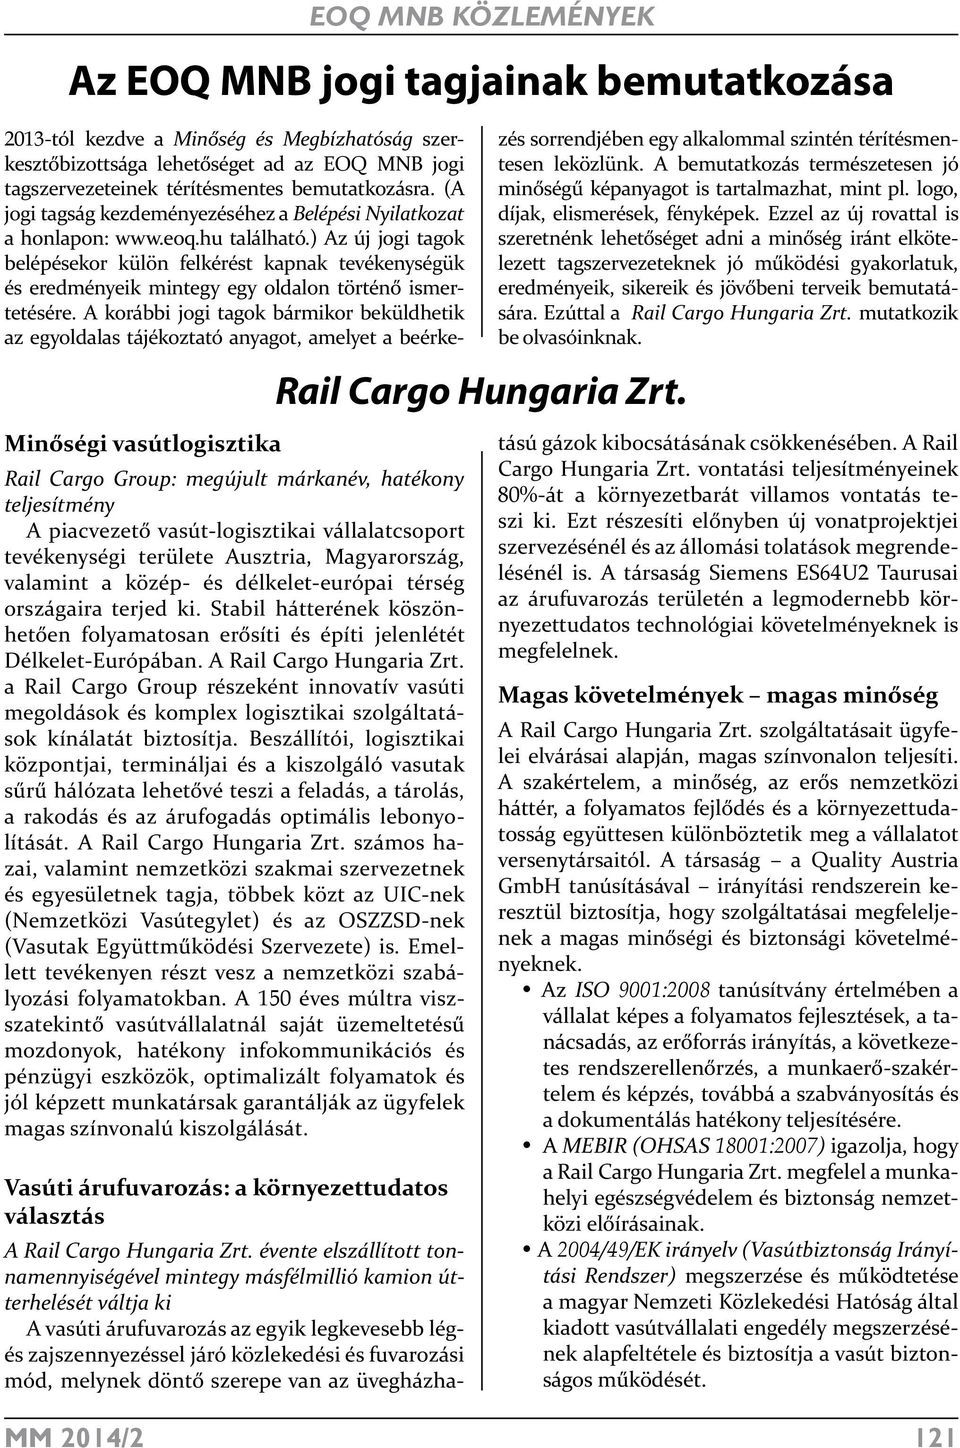 A Rail Cargo Hungaria Zrt. a Rail Cargo Group részeként innovatív vasúti megoldások és komplex logisztikai szolgáltatások kínálatát biztosítja.